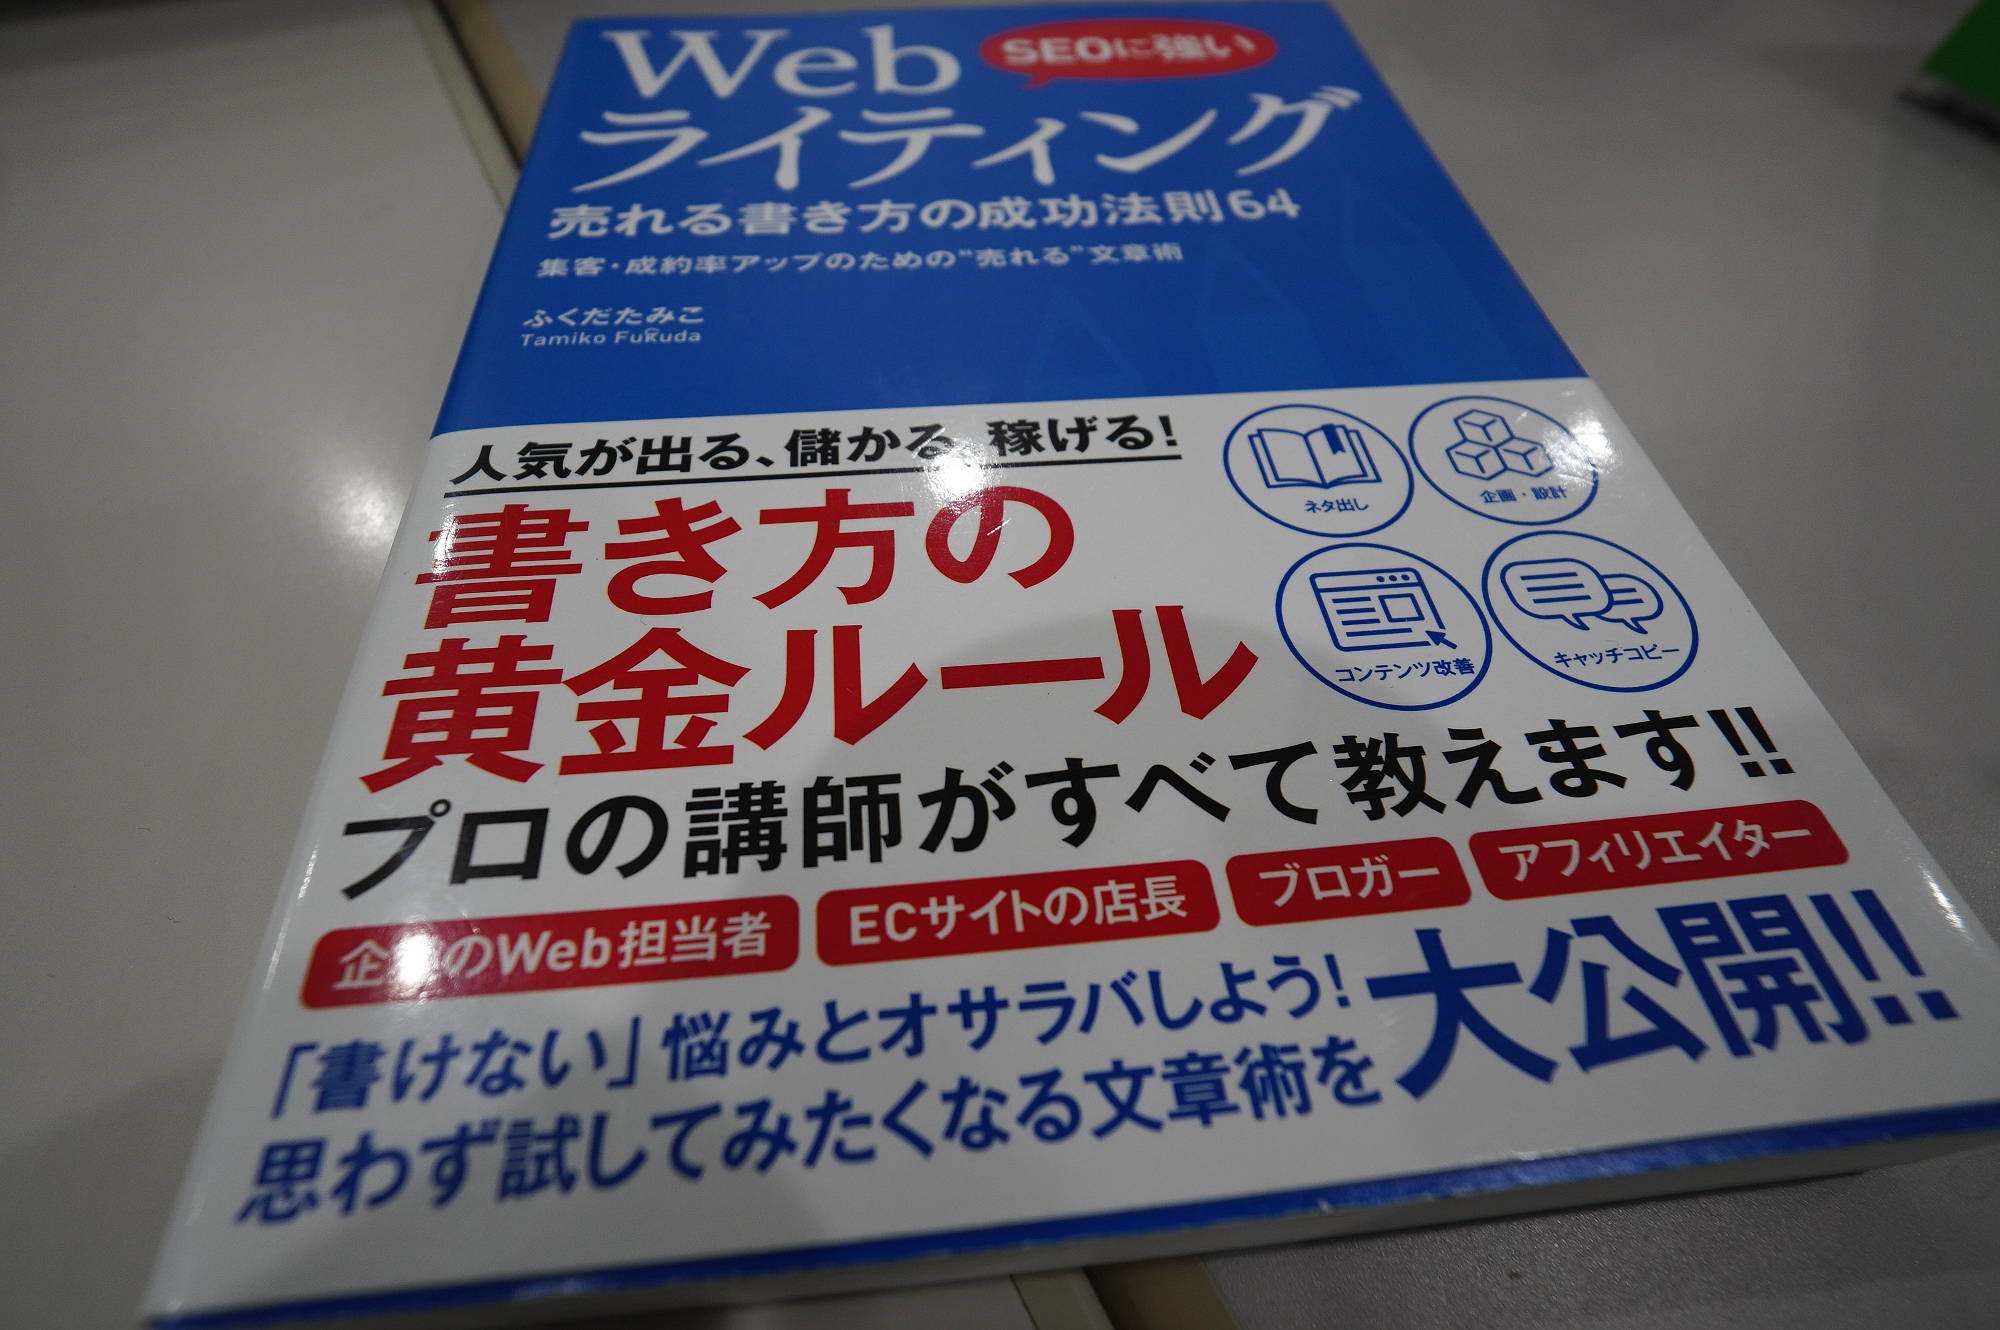 【SEO学習本】SEOに強い Webライティング 売れる書き方の成功法則64